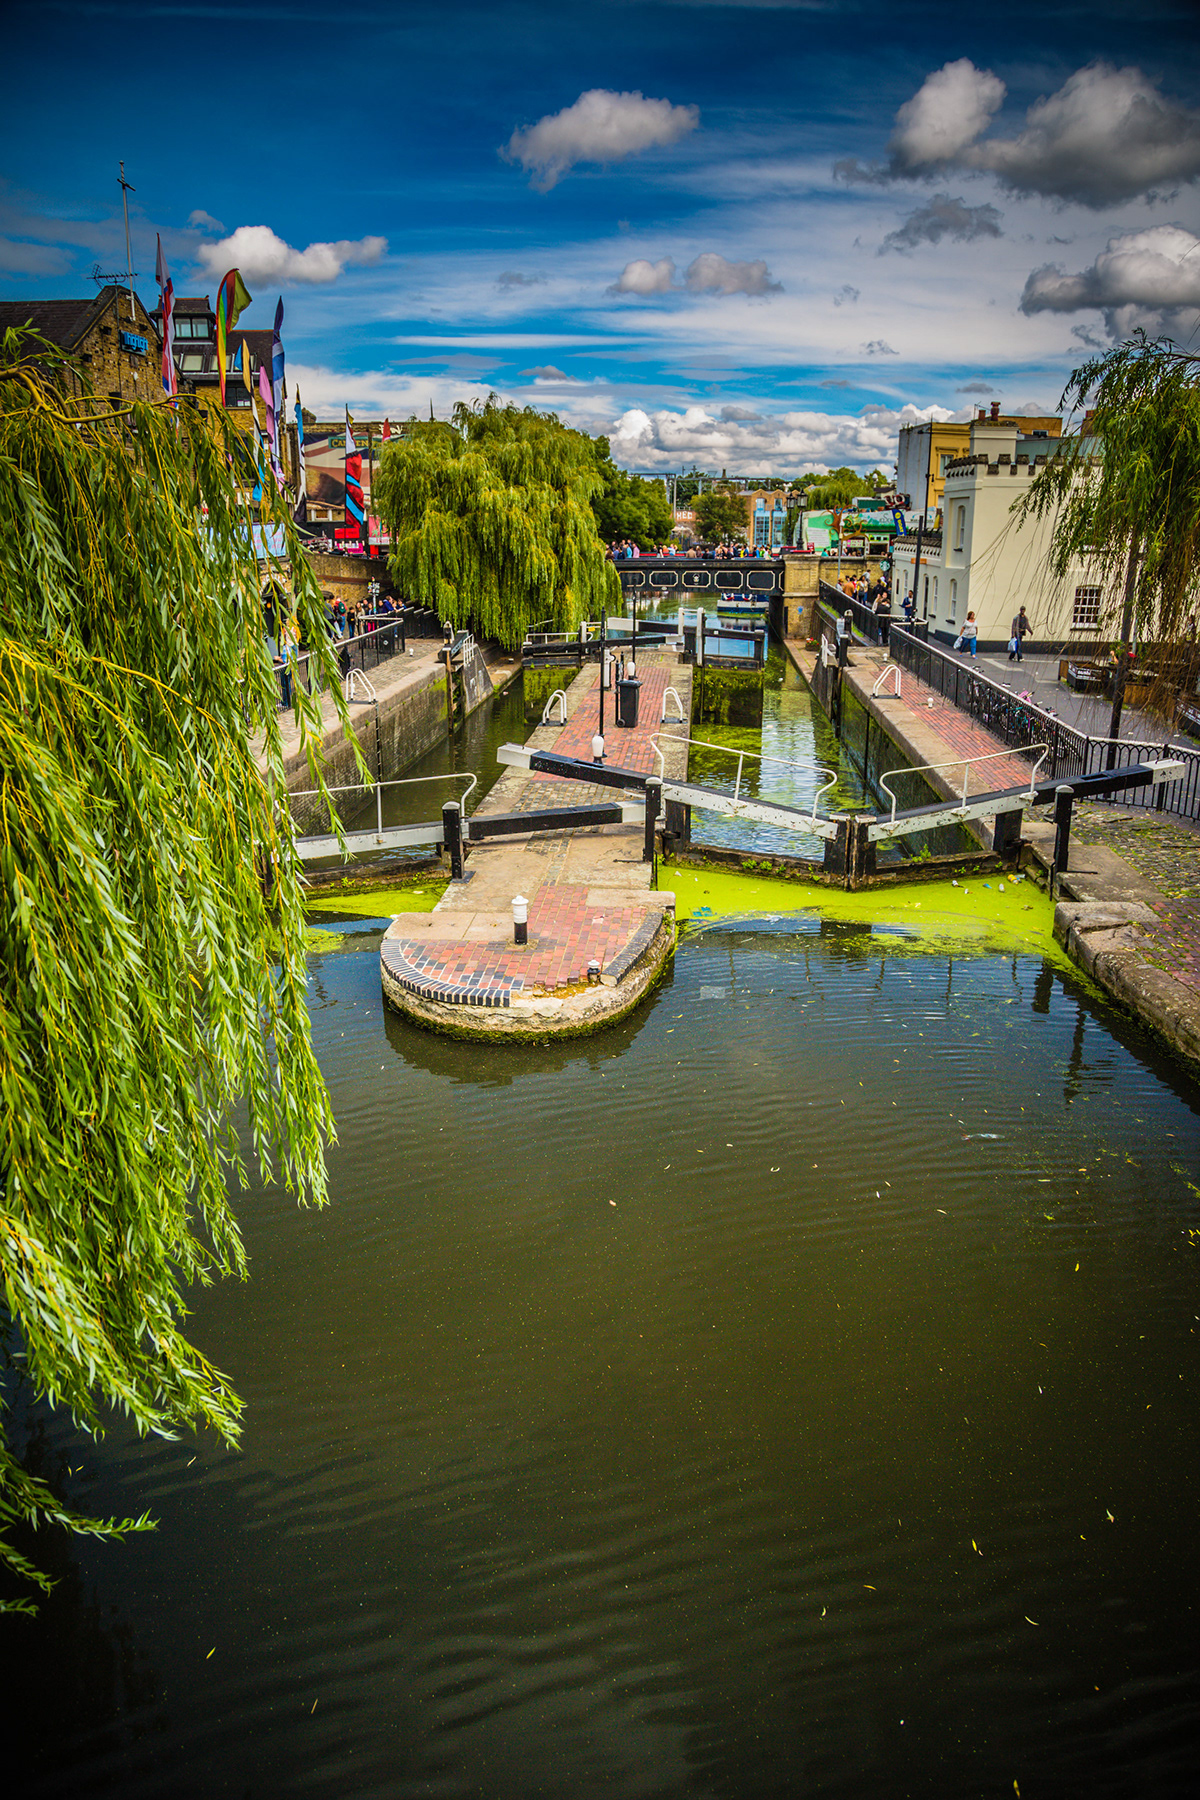 camden London canal market